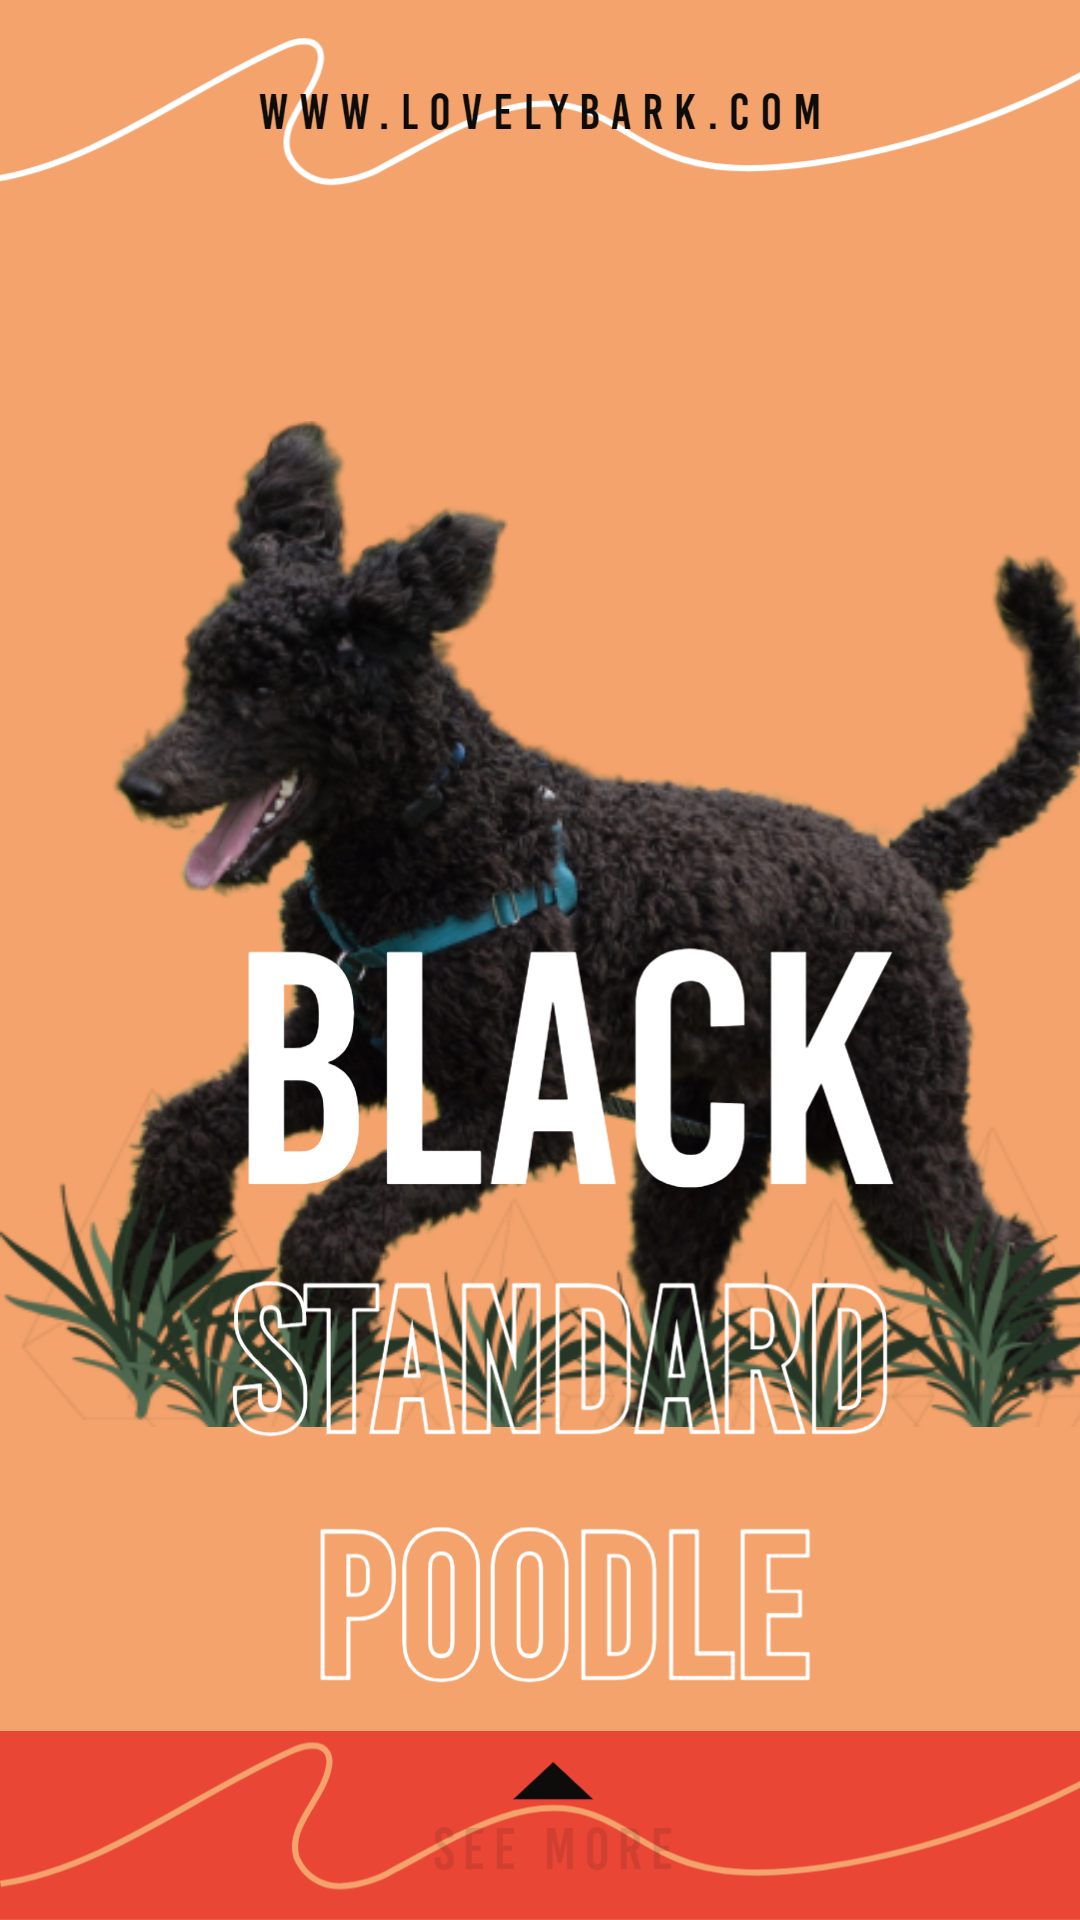 Black Standard Poodle